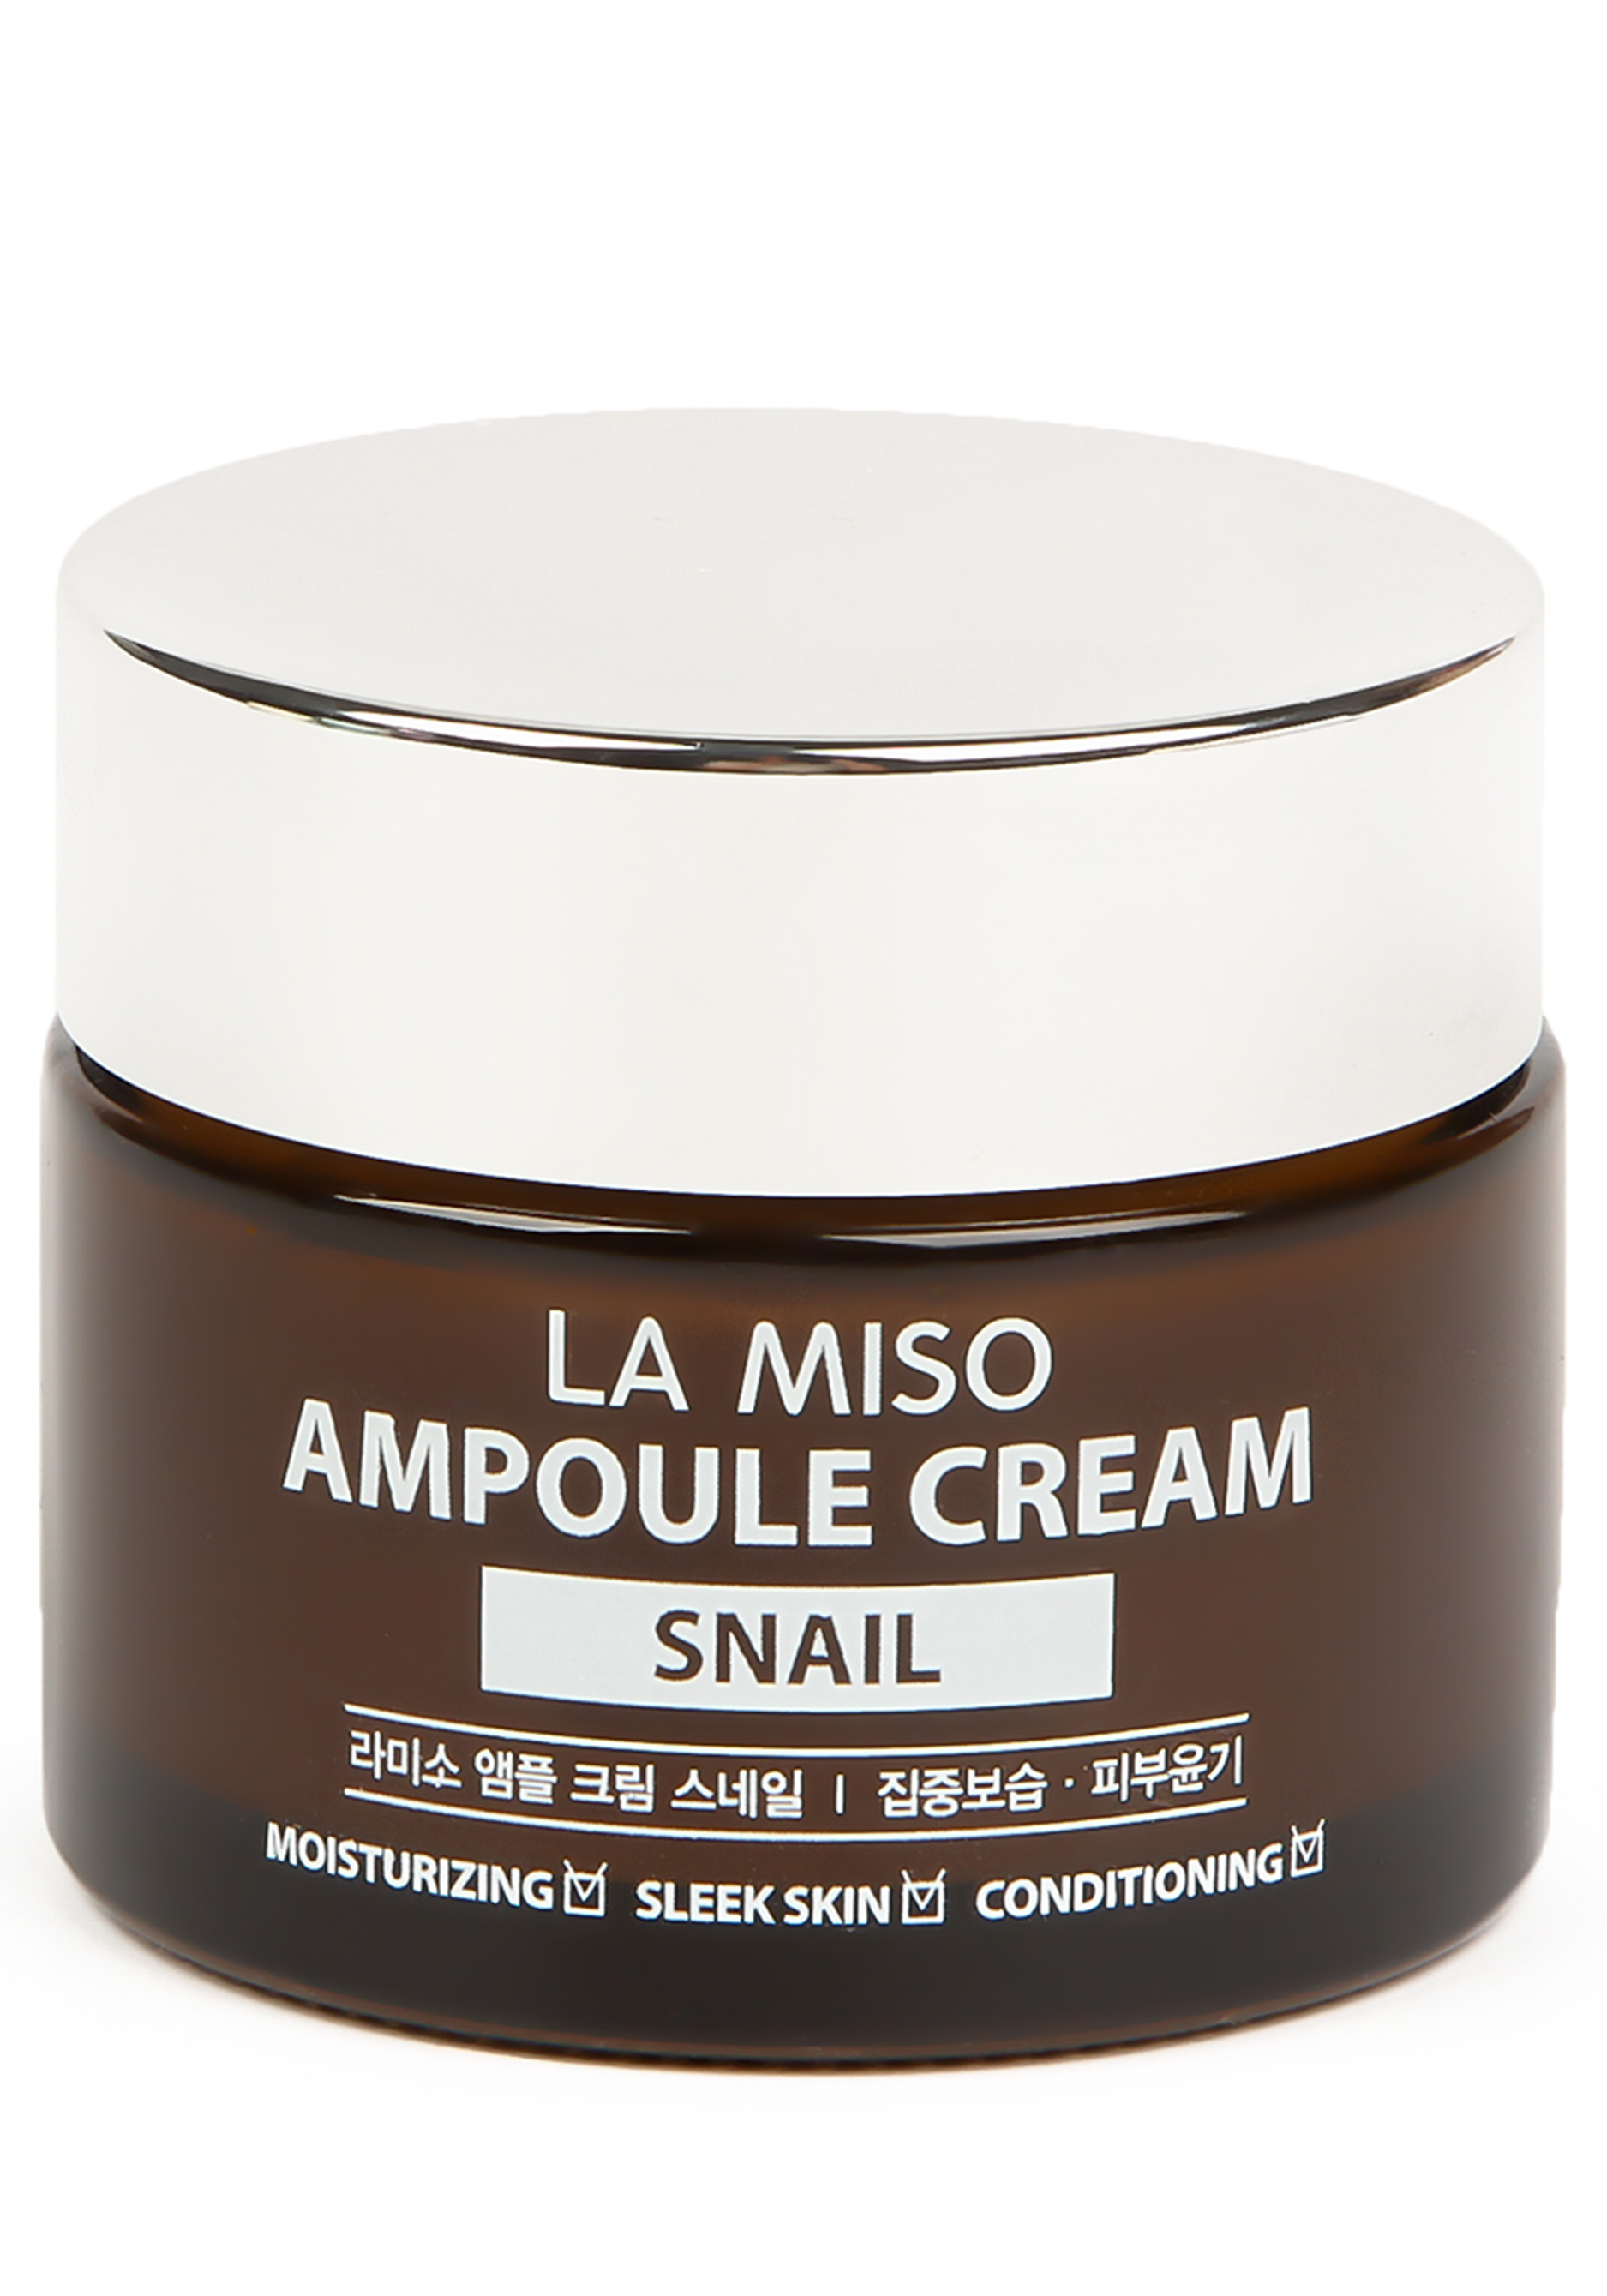 Купить крем улитки. La Miso Ampoule Cream Snail. Ампульный крем la Miso с экстрактом слизи улитки, 50 мл. Snail Ampoule Cream крем с экстрактом улитки. Корейский крем для лица Ampoule.